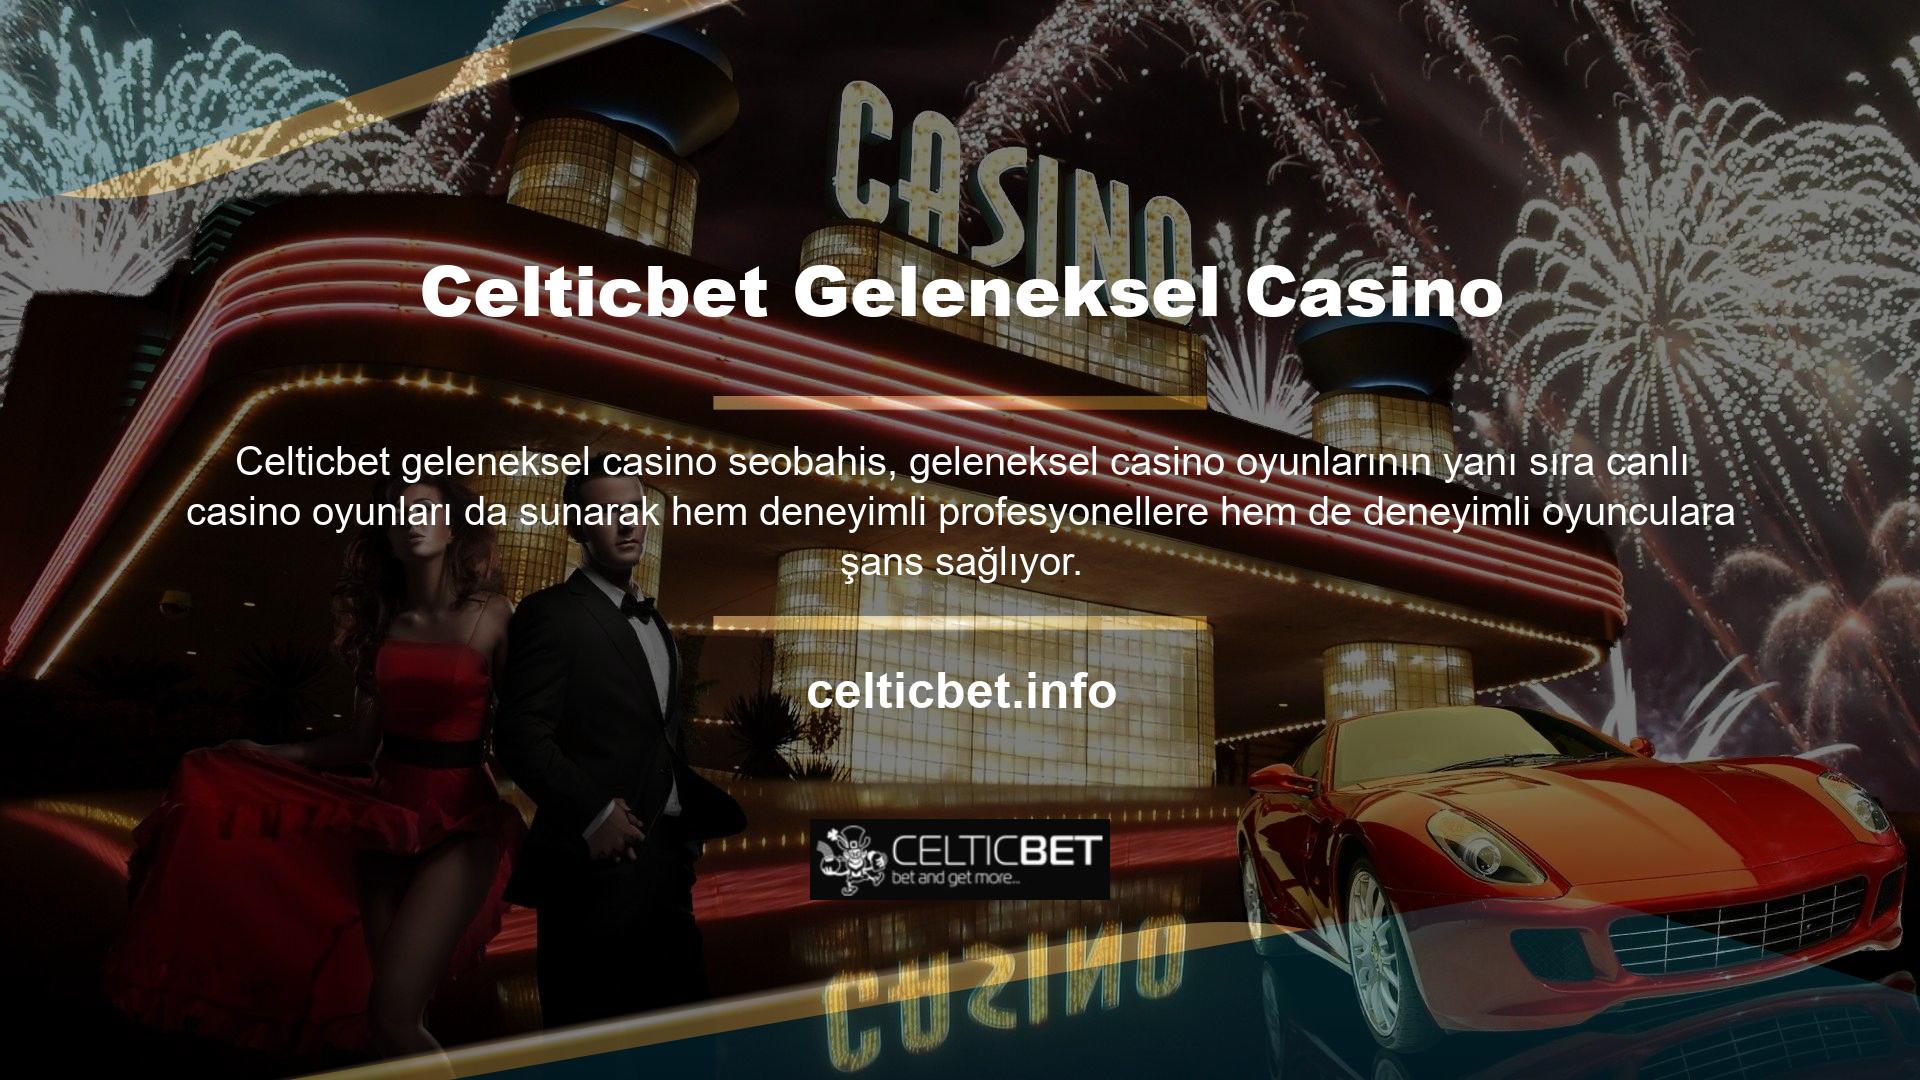 Site, oyuncuların eğlencesini artırmak ve kazanma şanslarını artırmak için çok çeşitli casino oyunları sunar ve bunları canlı olarak yayınlar